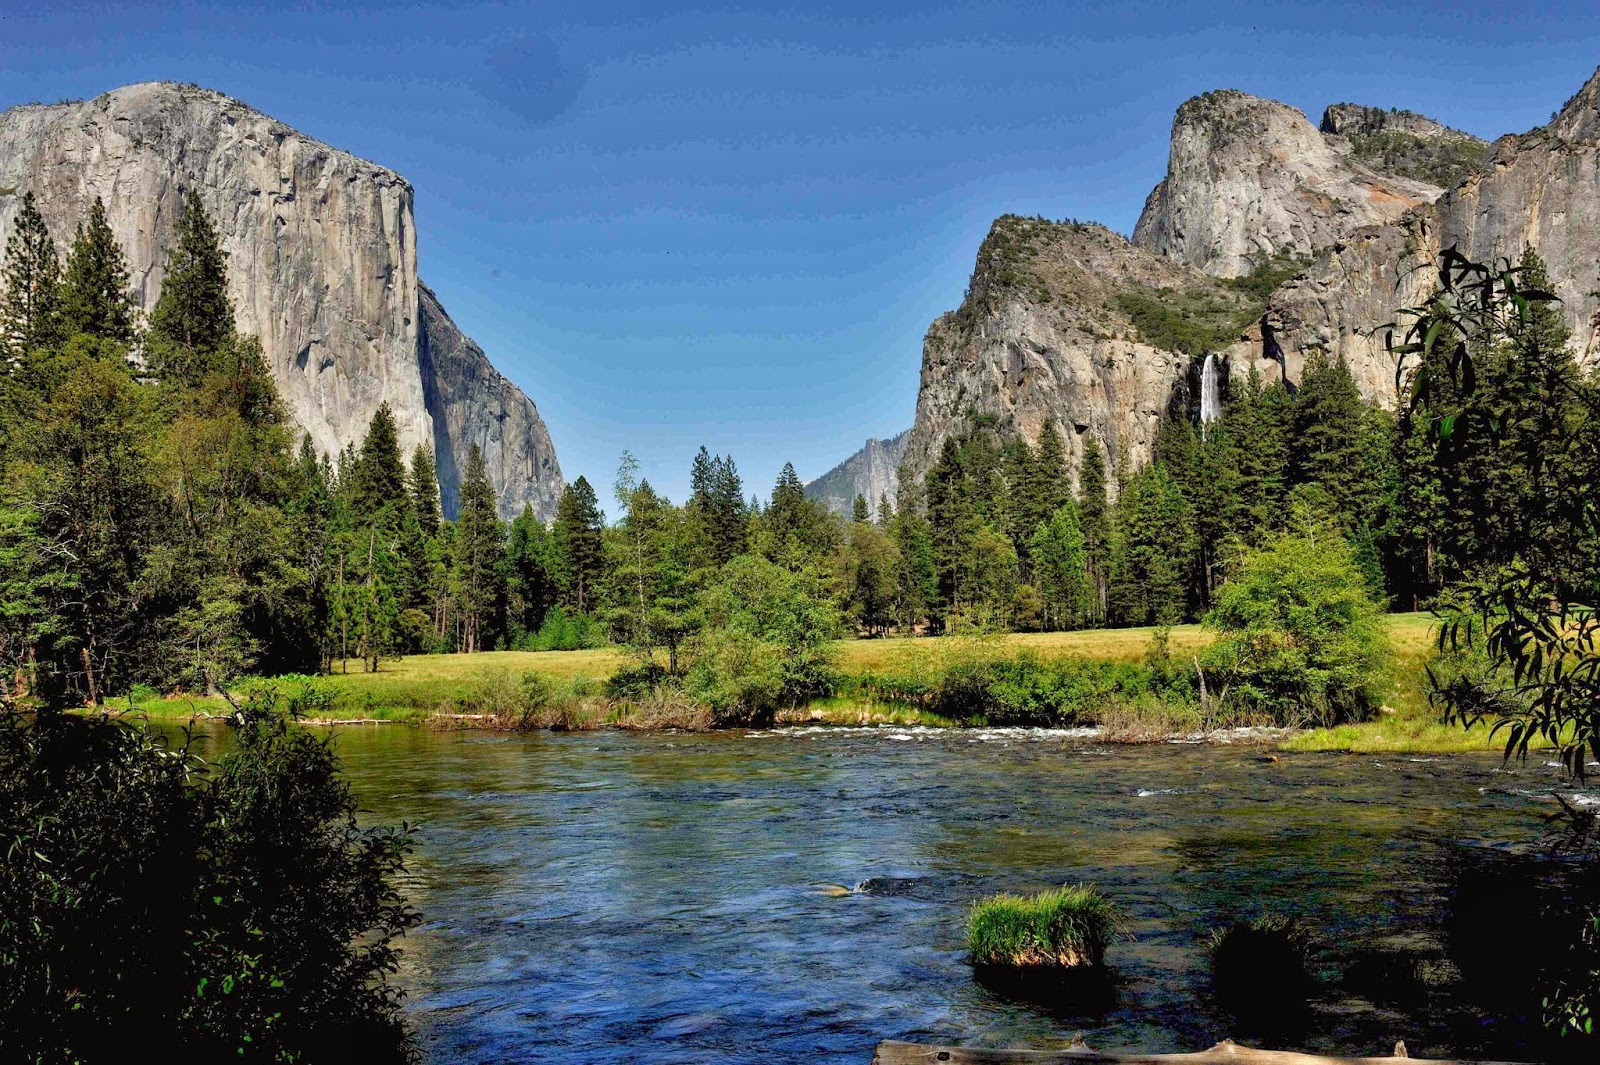 Travel around the world: Yosemite National Park, California